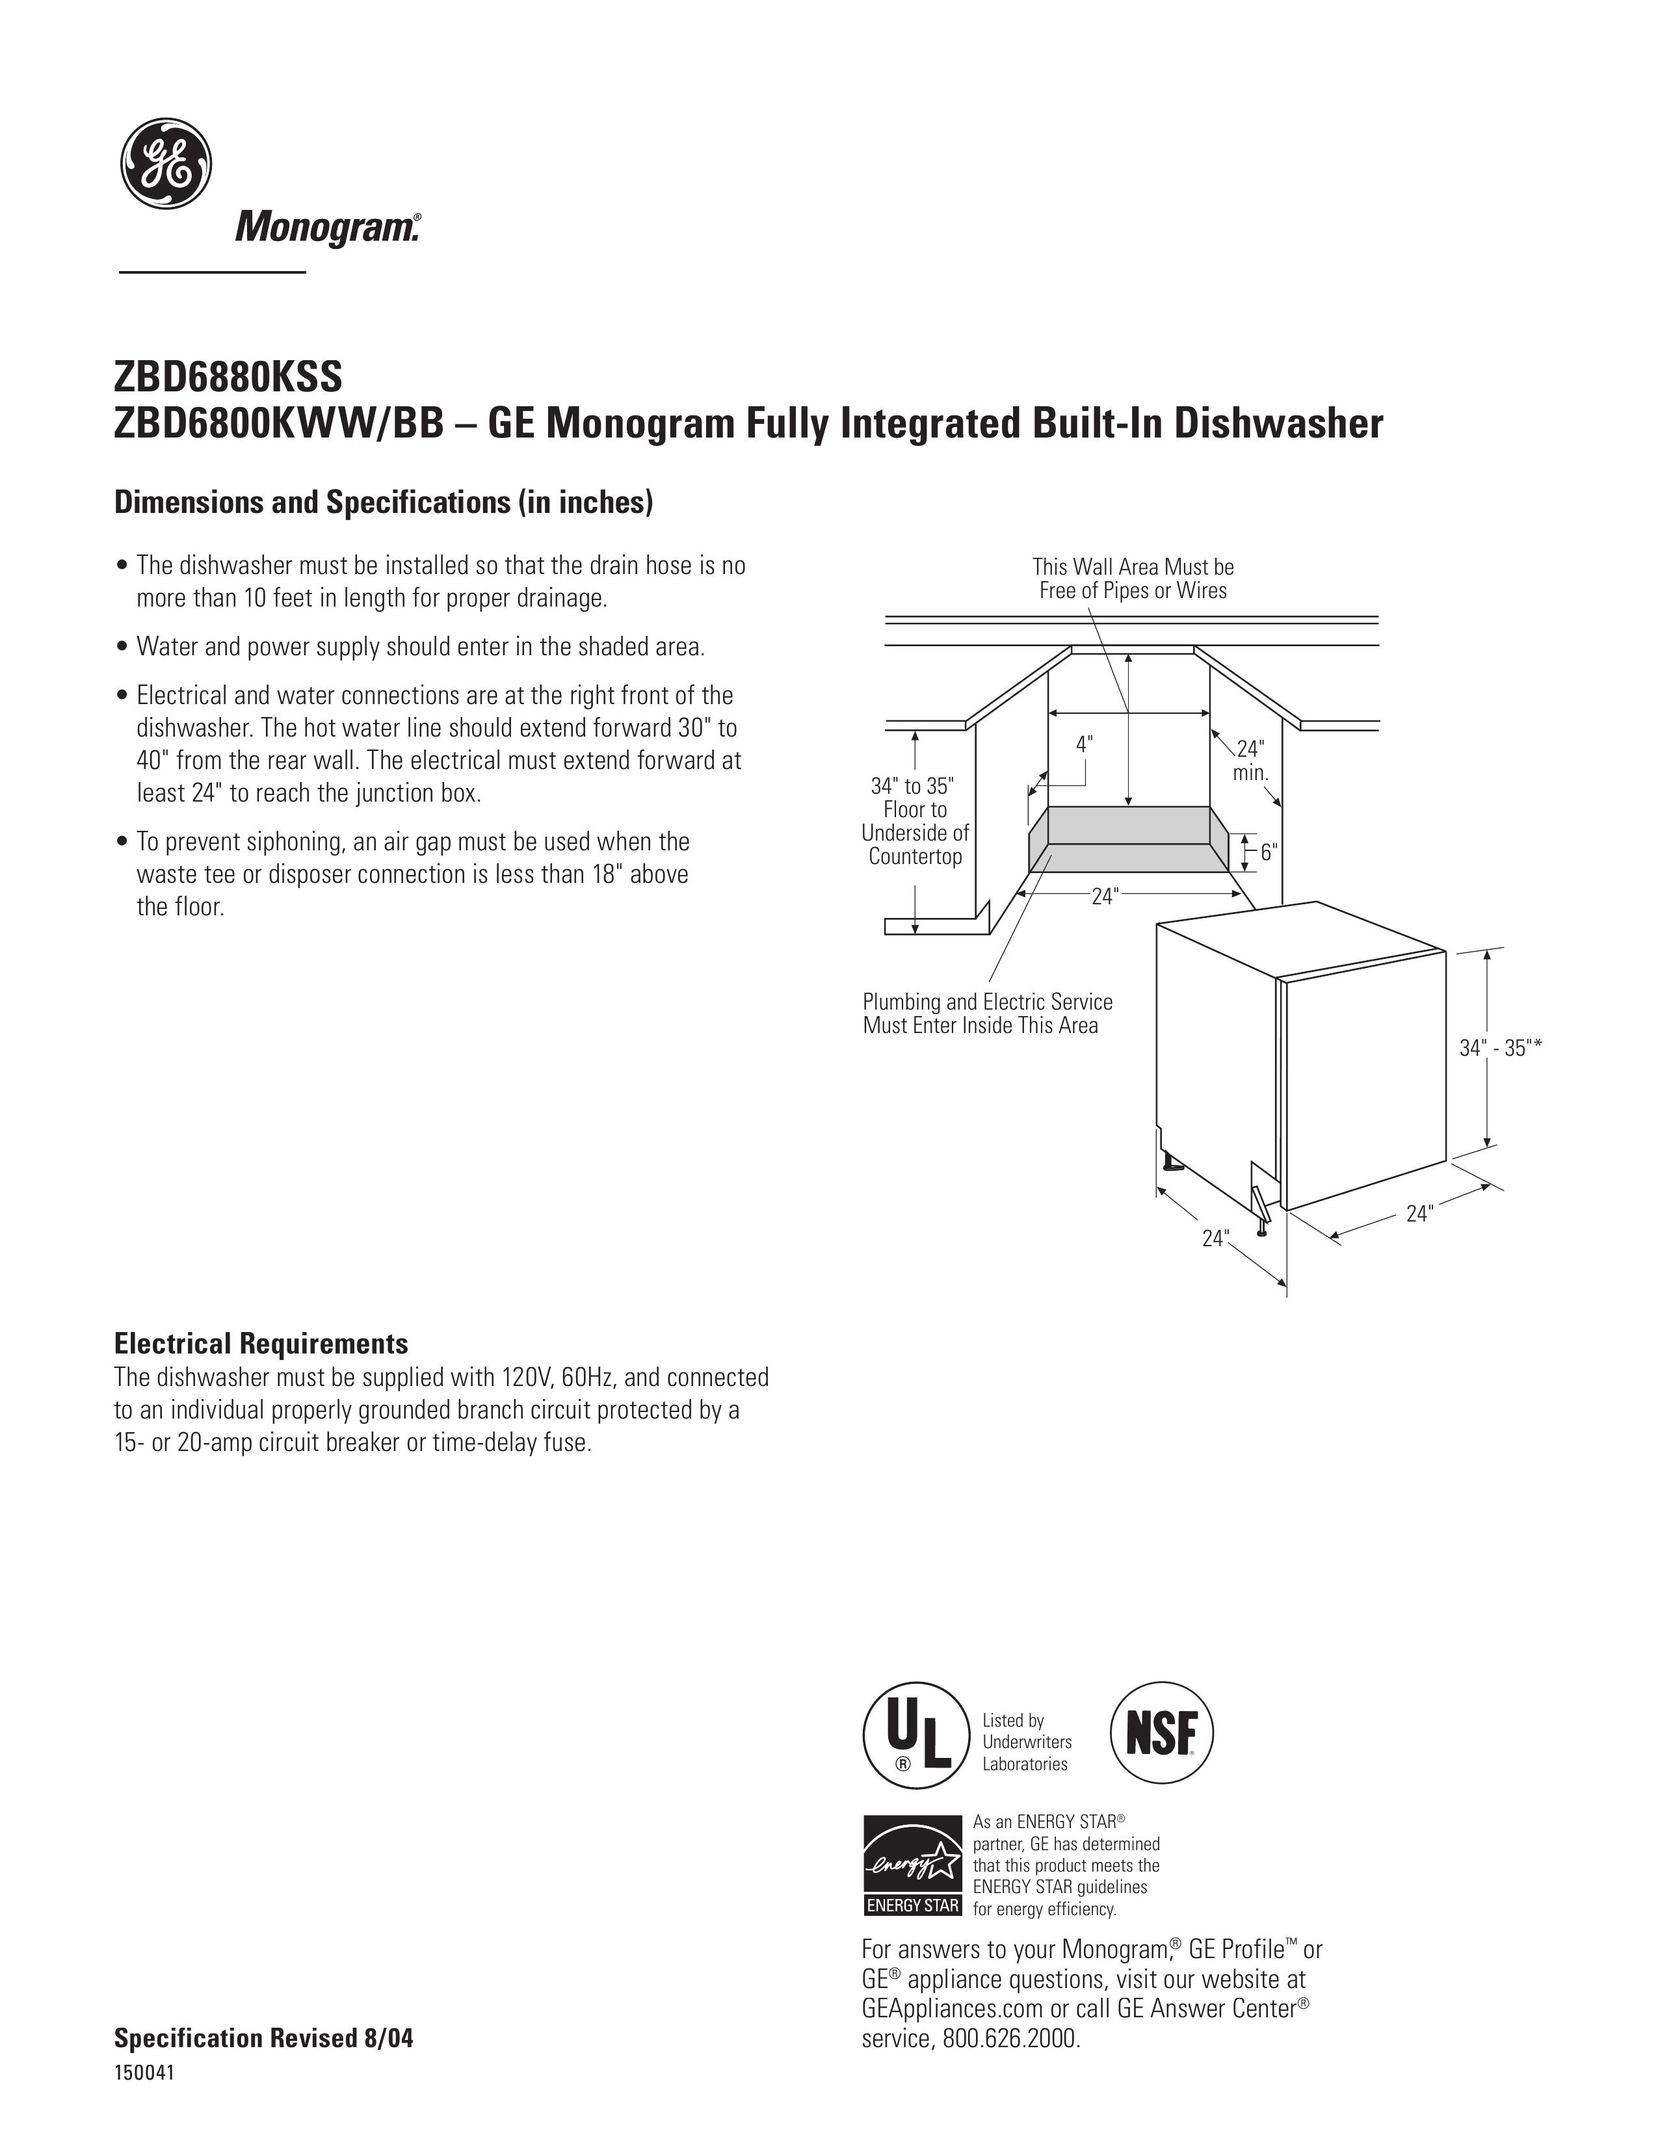 GE Monogram ZBD6800KWW Dishwasher User Manual